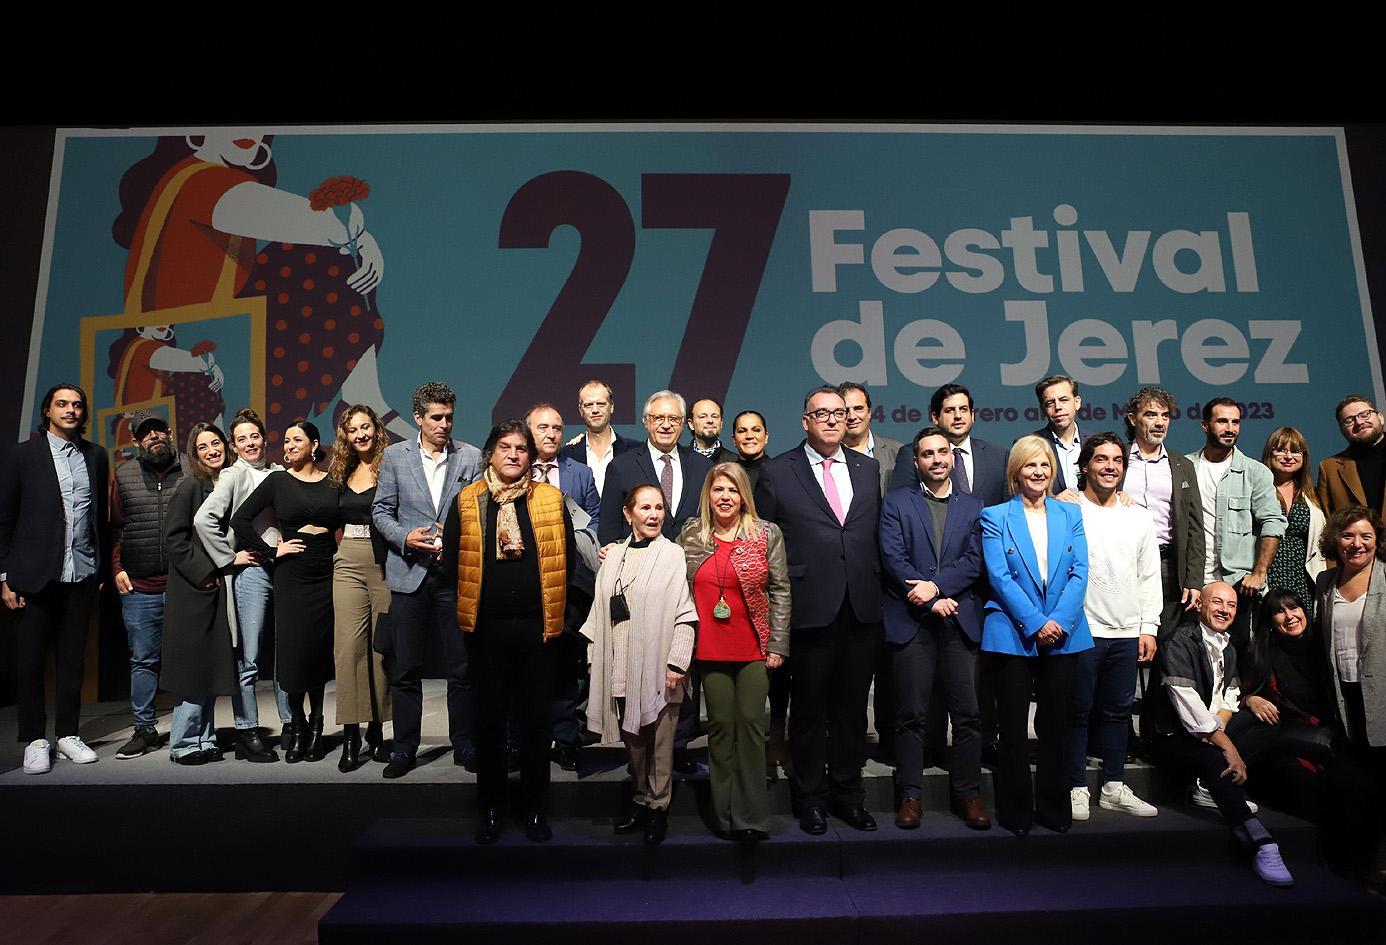 El XXVII Festival de Jerez traza el mapa del flamenco en sus 46 espectáculos, con 13 estrenos